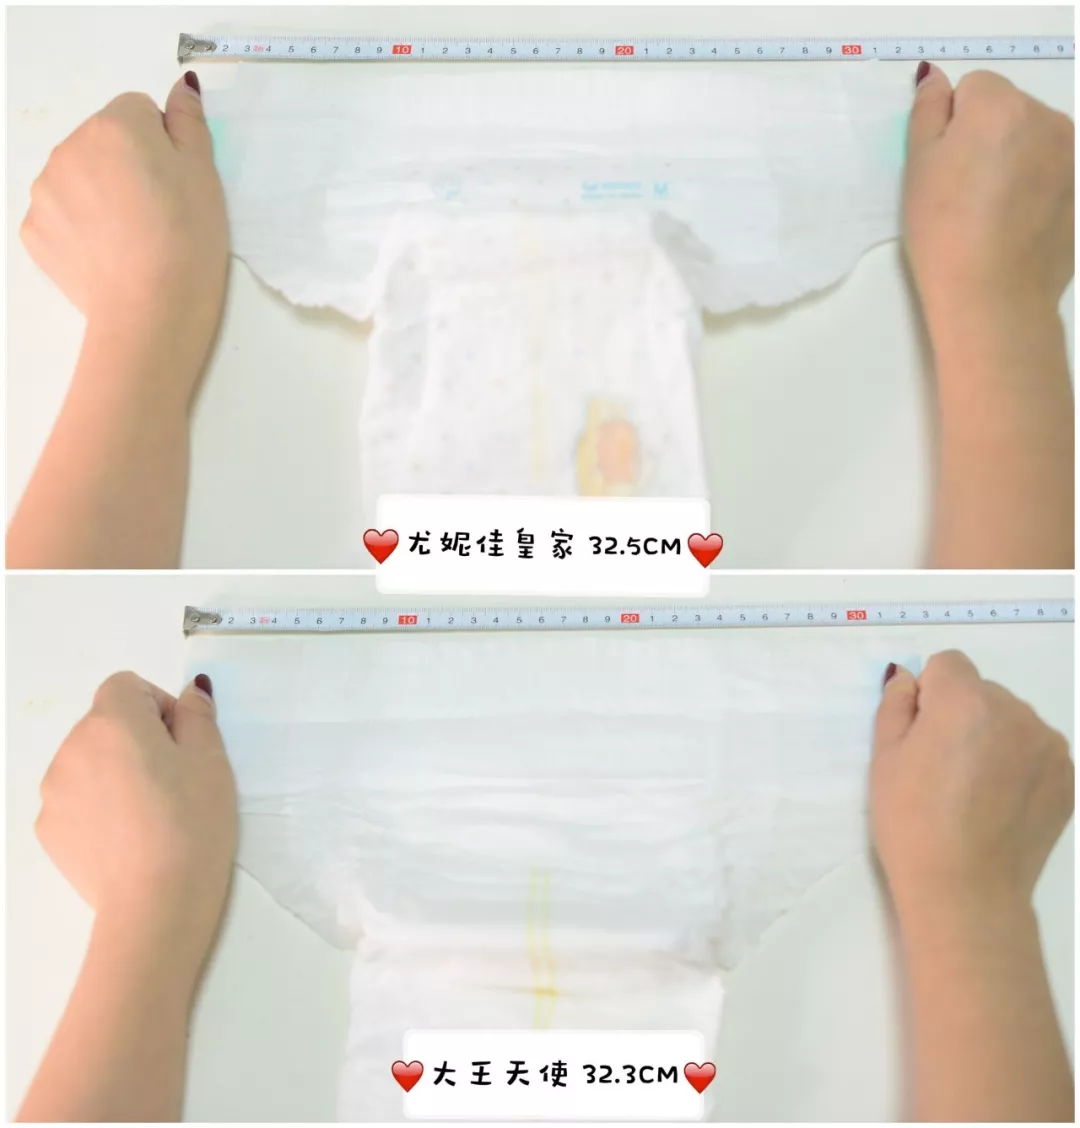 品牌|宝宝纸尿裤全方位测评 什么牌子的纸尿裤最好用2019